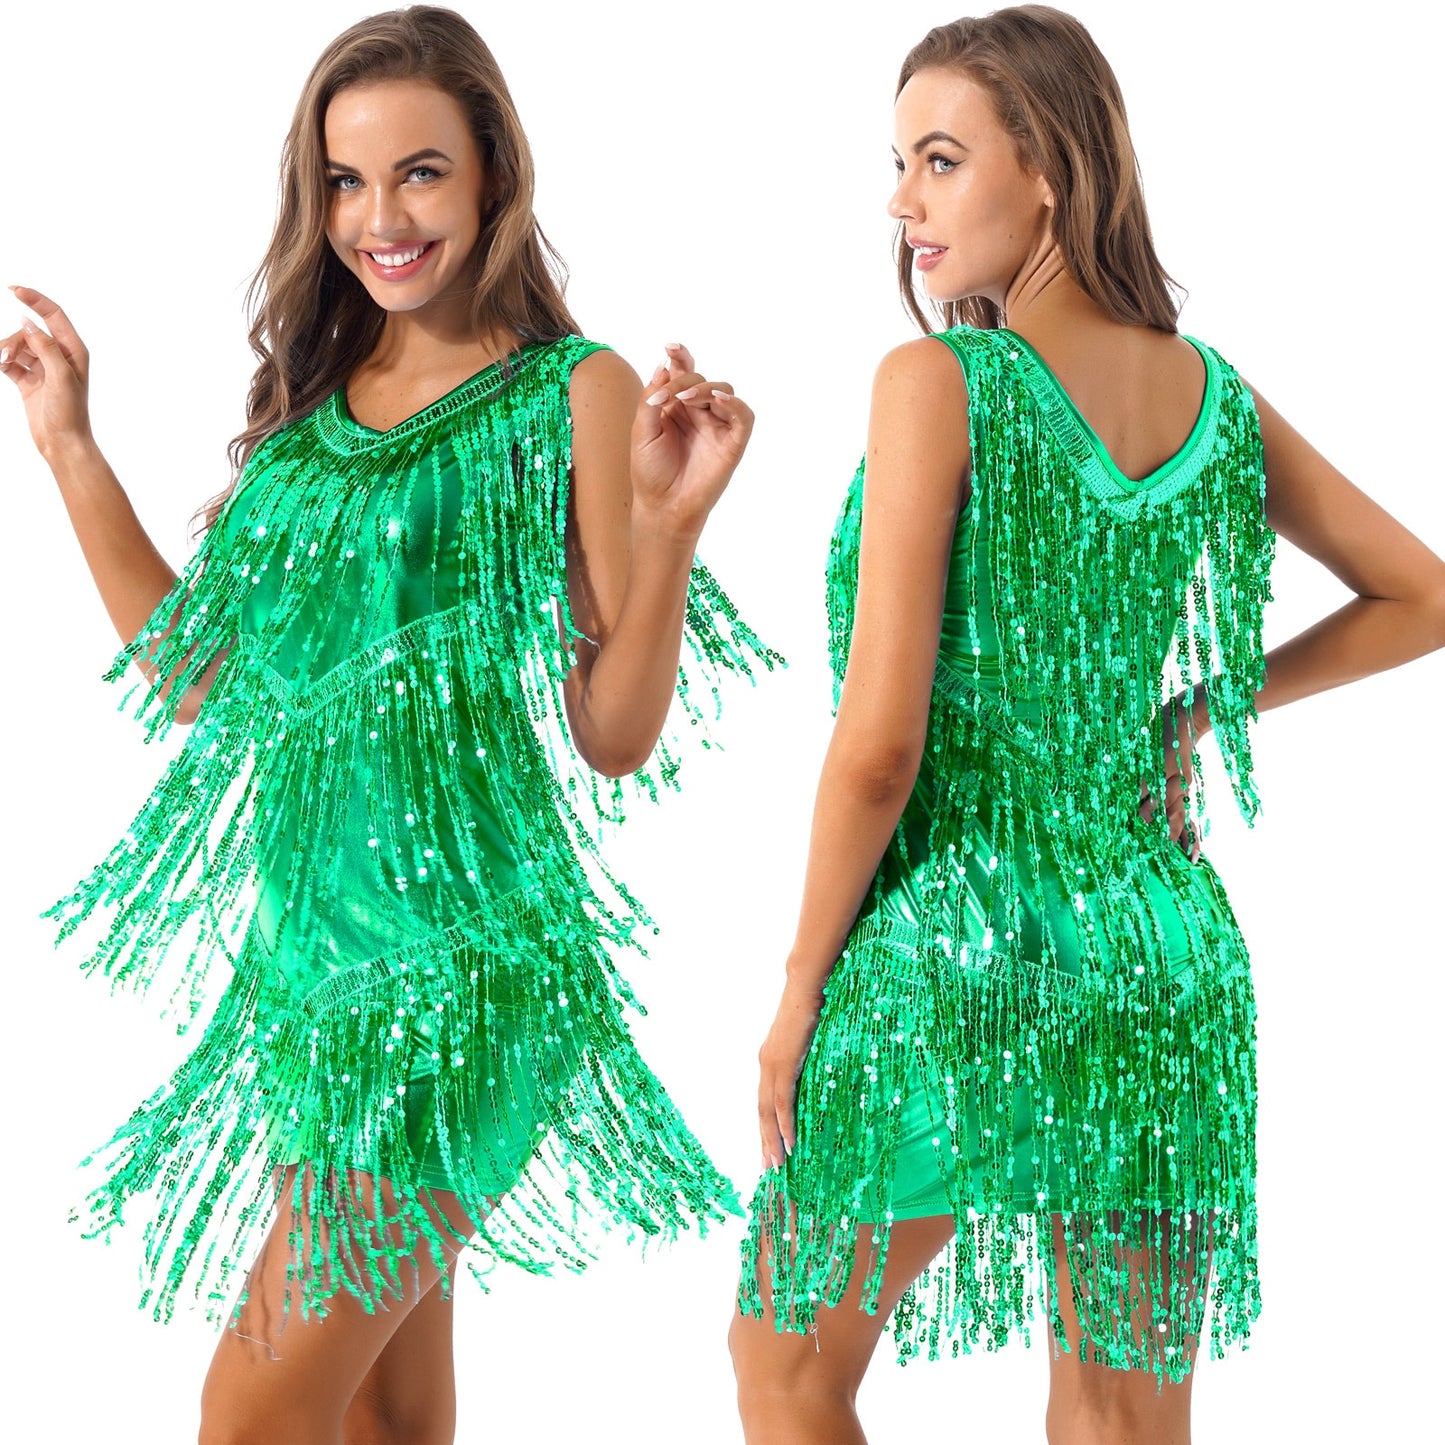 Ladies Sleeveless Sparkling Sequin Tassels Fringe Ballroom Latin Dance Dress